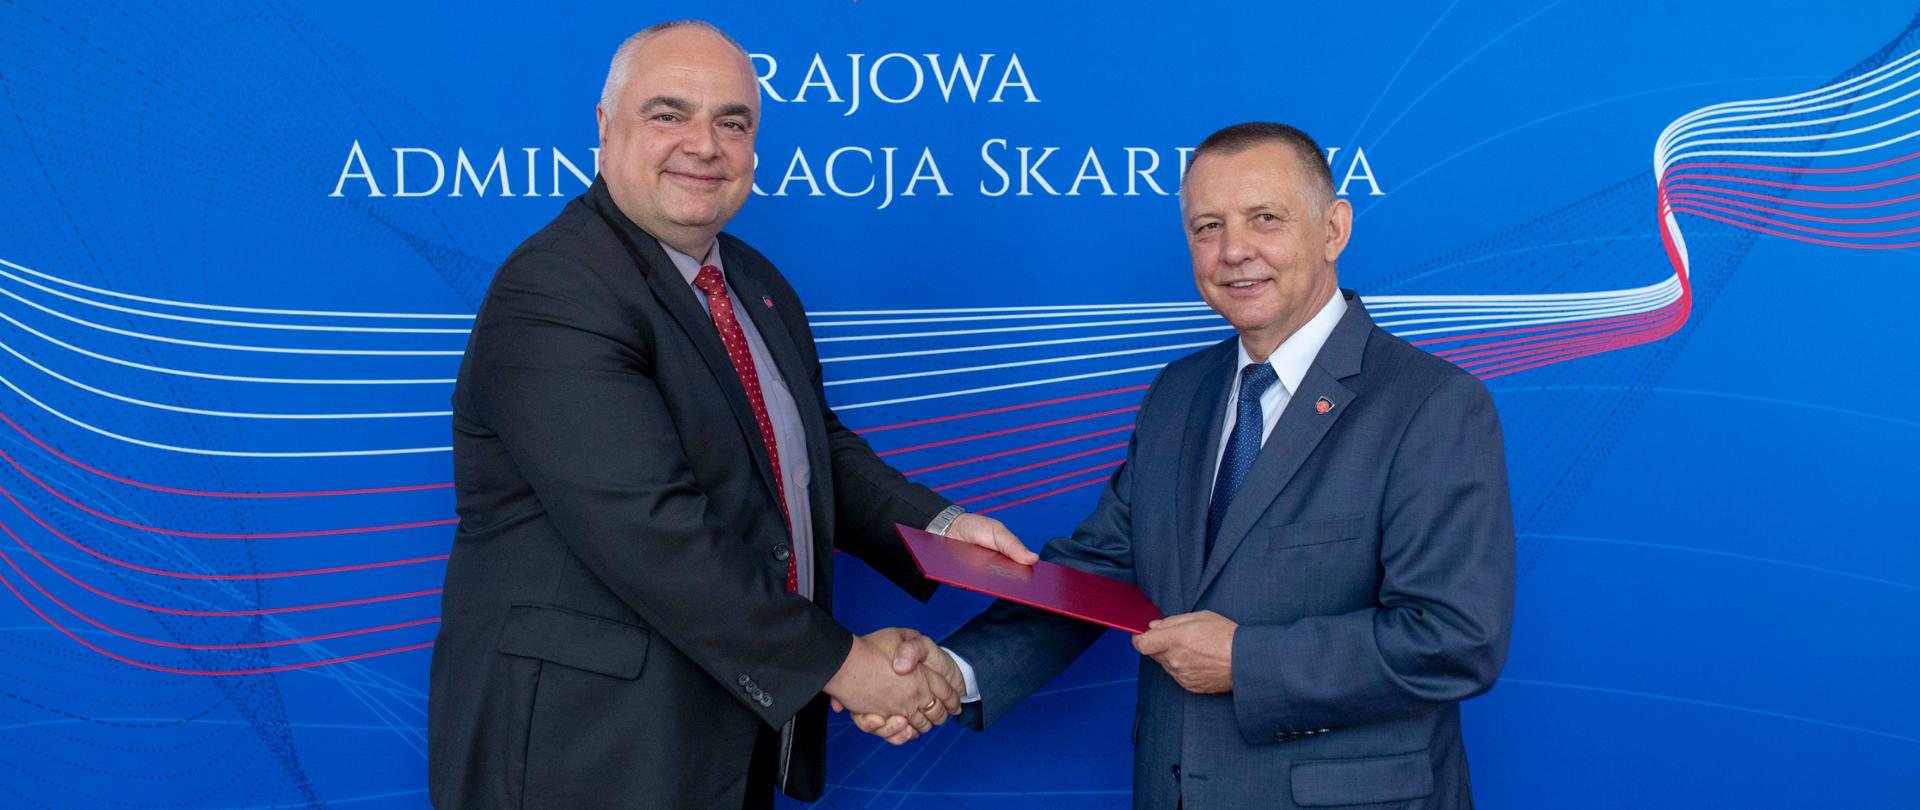 Uśmiechnięty minister Marian Banaś i wiceminister Tomasz Słaboszowski trzymają uściśniętą rękę na tle baneru Krajowej Administracji Skarbowej